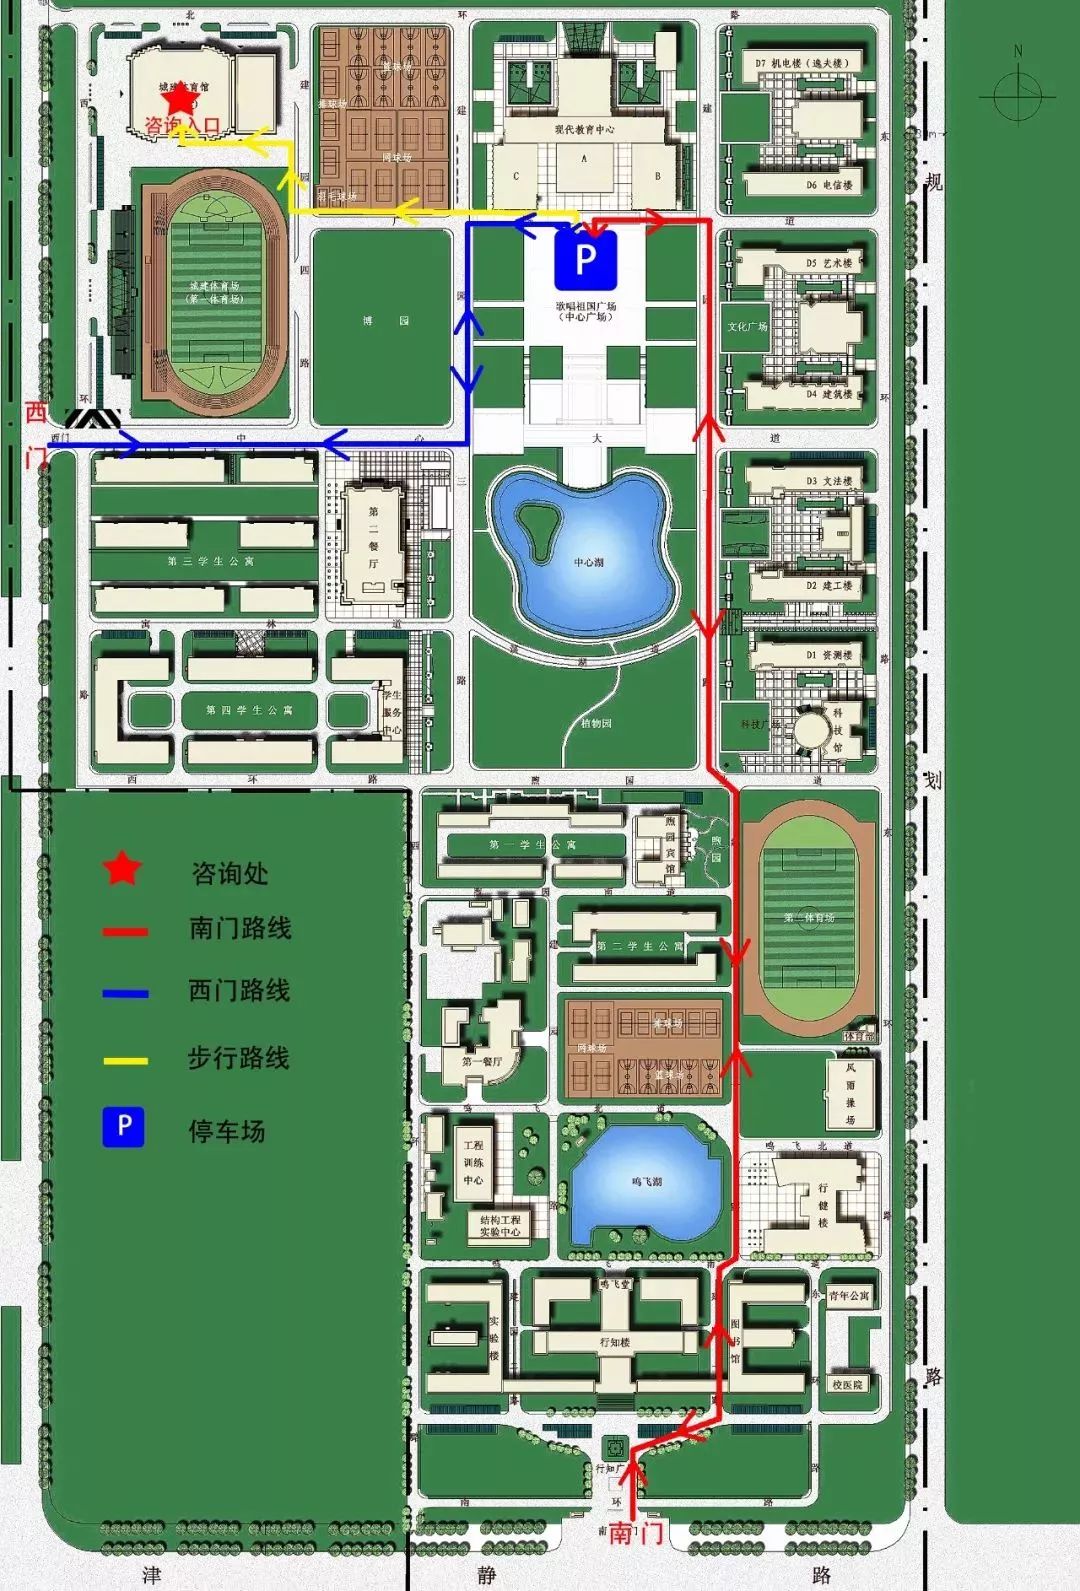 天津农学院地图图片